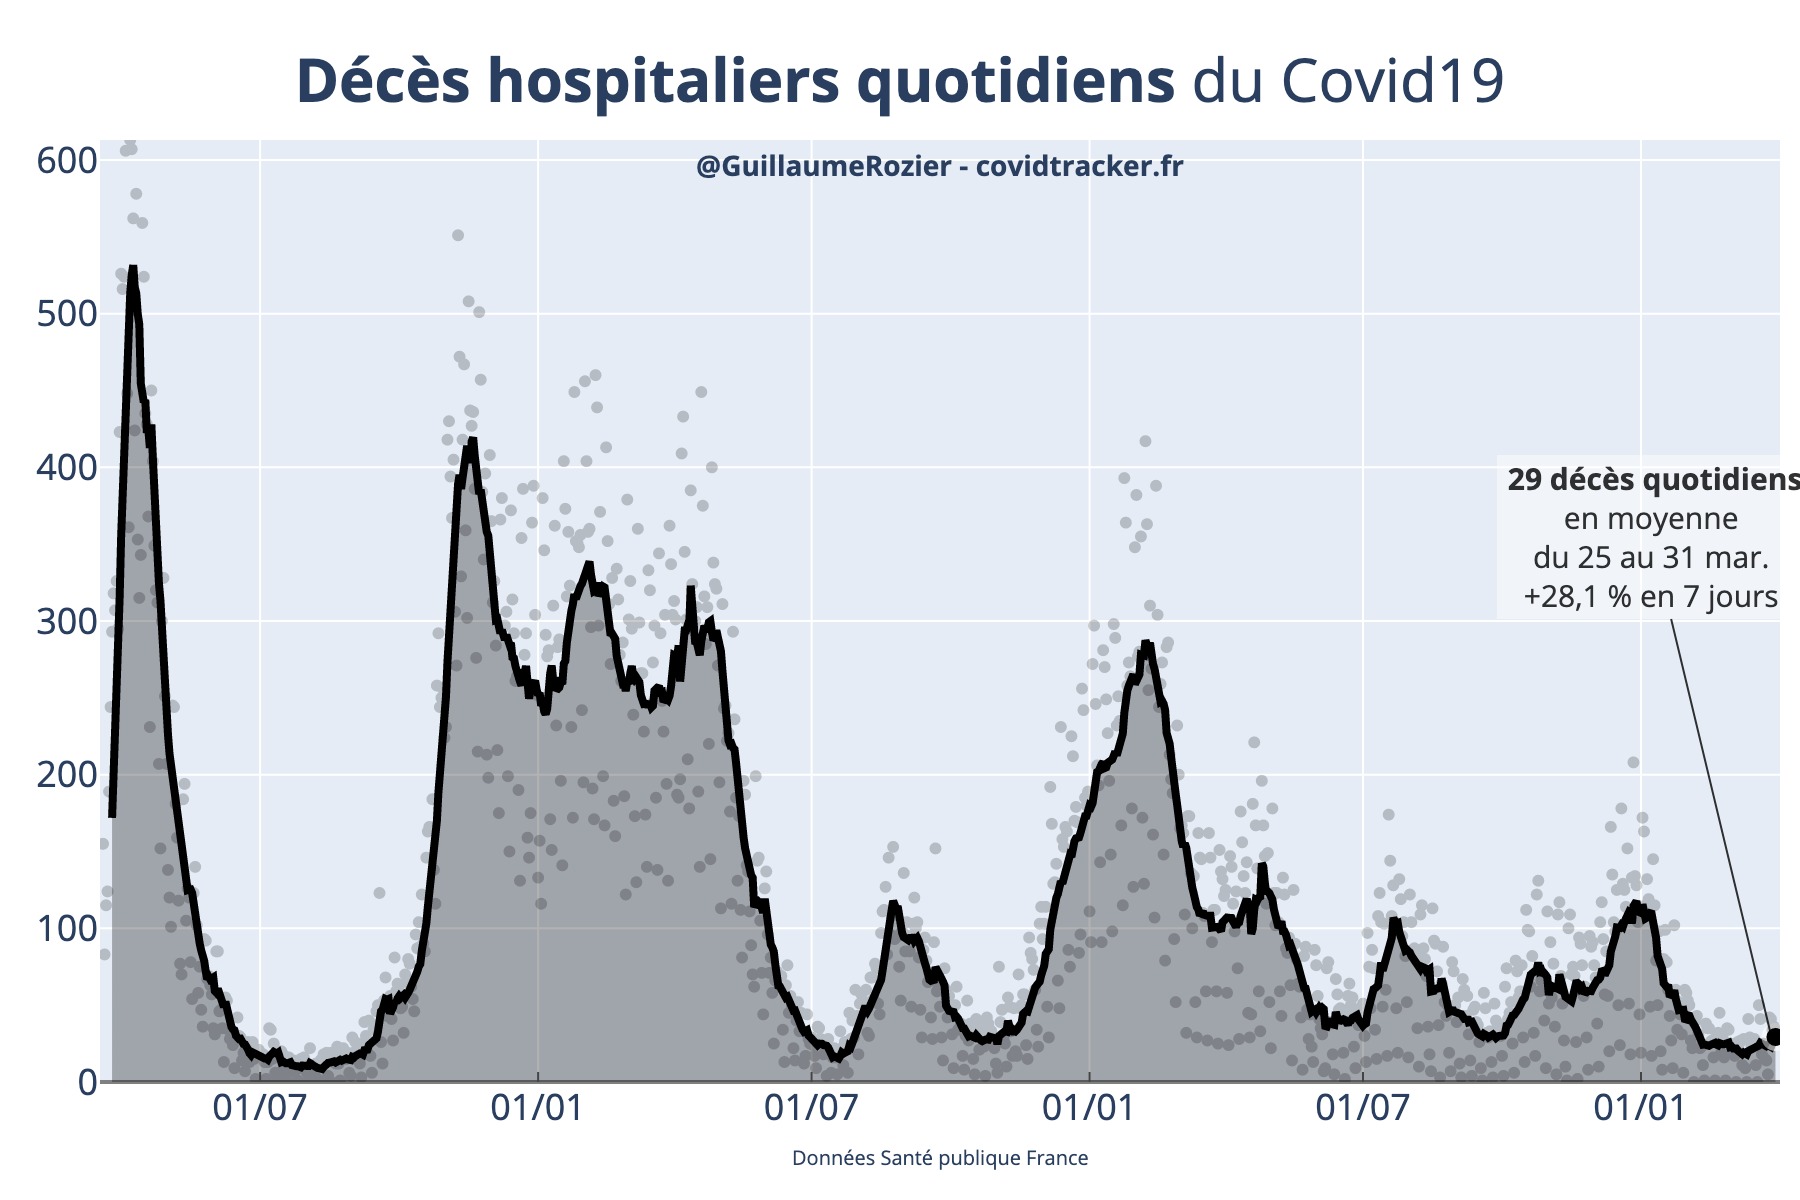 Nombre de décès quotidiens de COVID-19 direct à l'hôpital en France, actualisé quotidiennement par Guillaume Rozier (Crédit : Guillaume Rozier pour covidtracker.fr)